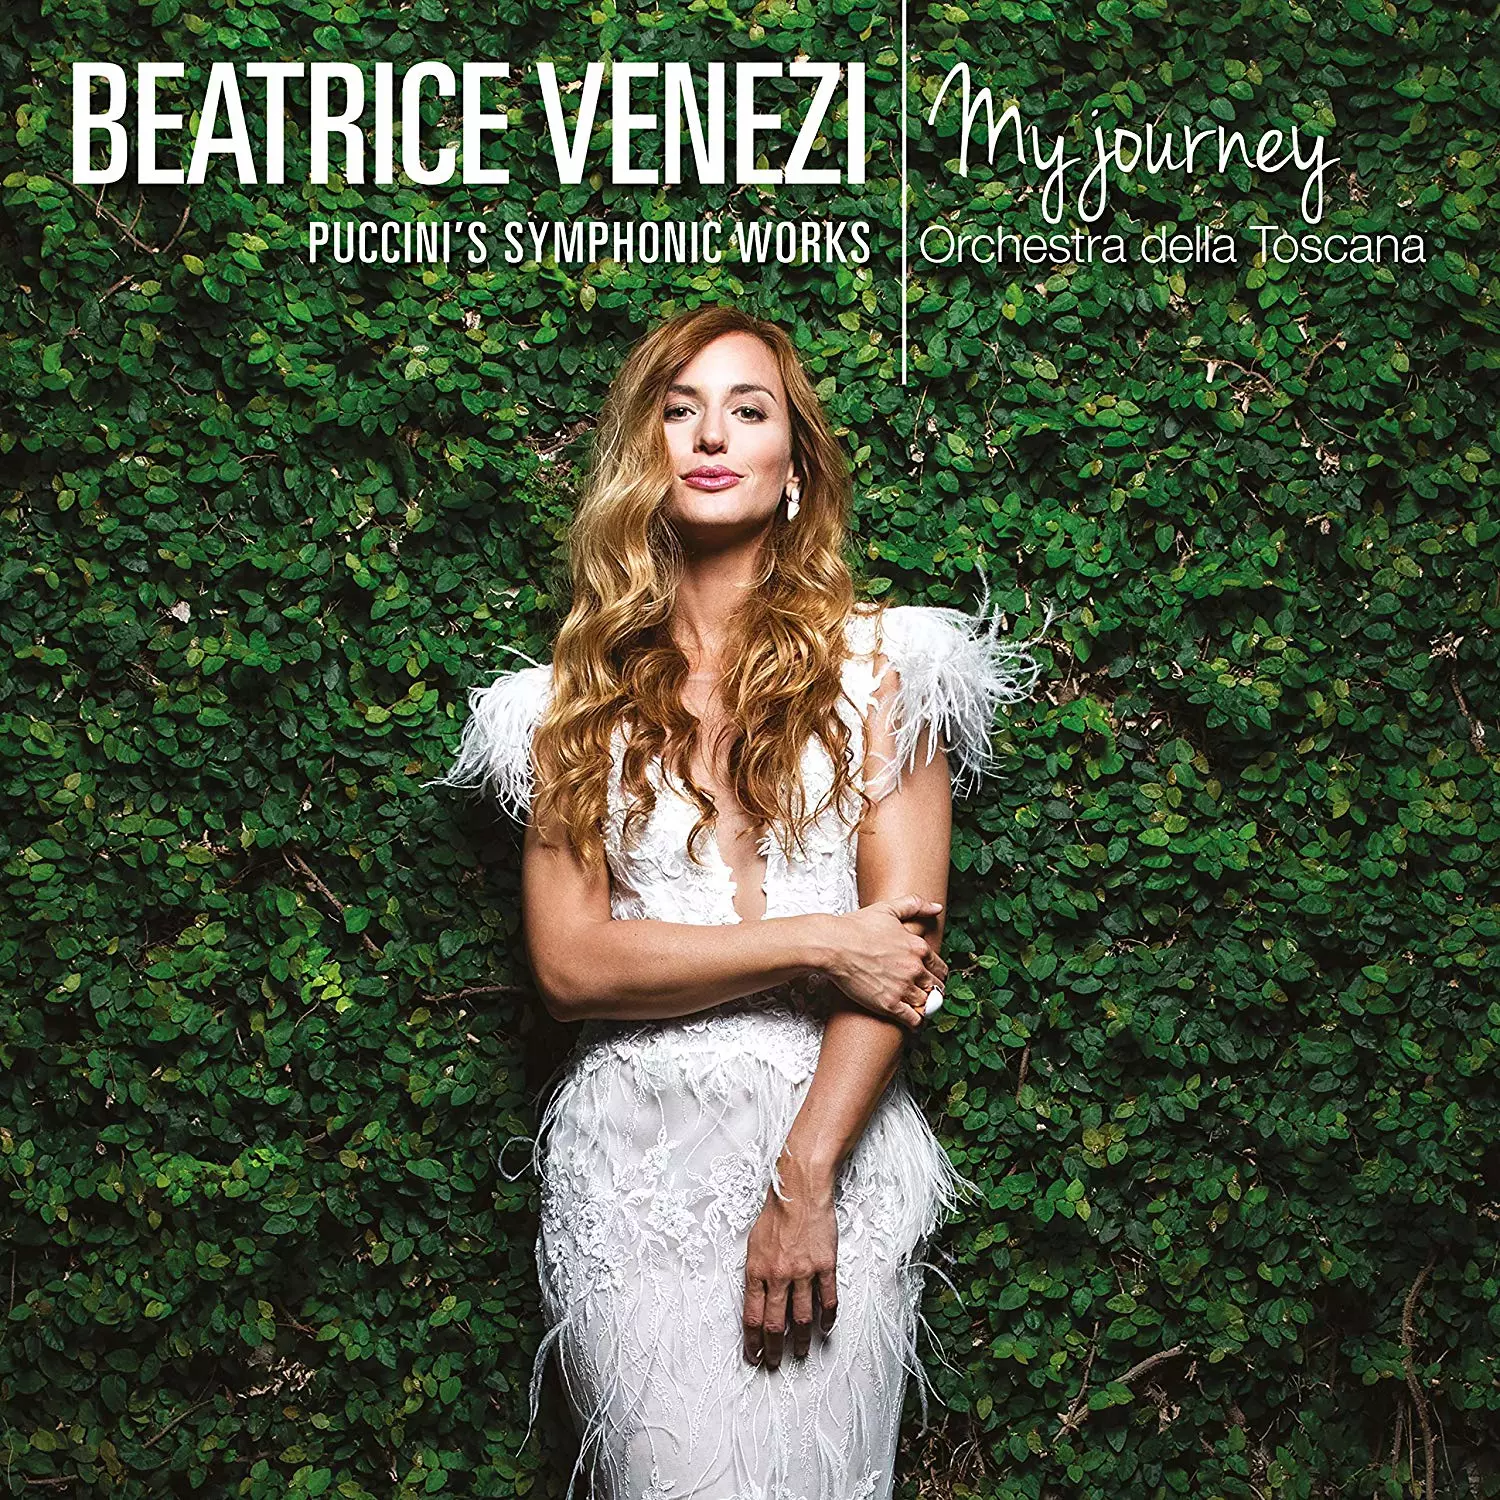 My Journey – Puccini’s Symphonic Works Beatrice Venezi Orchestra della Toscana